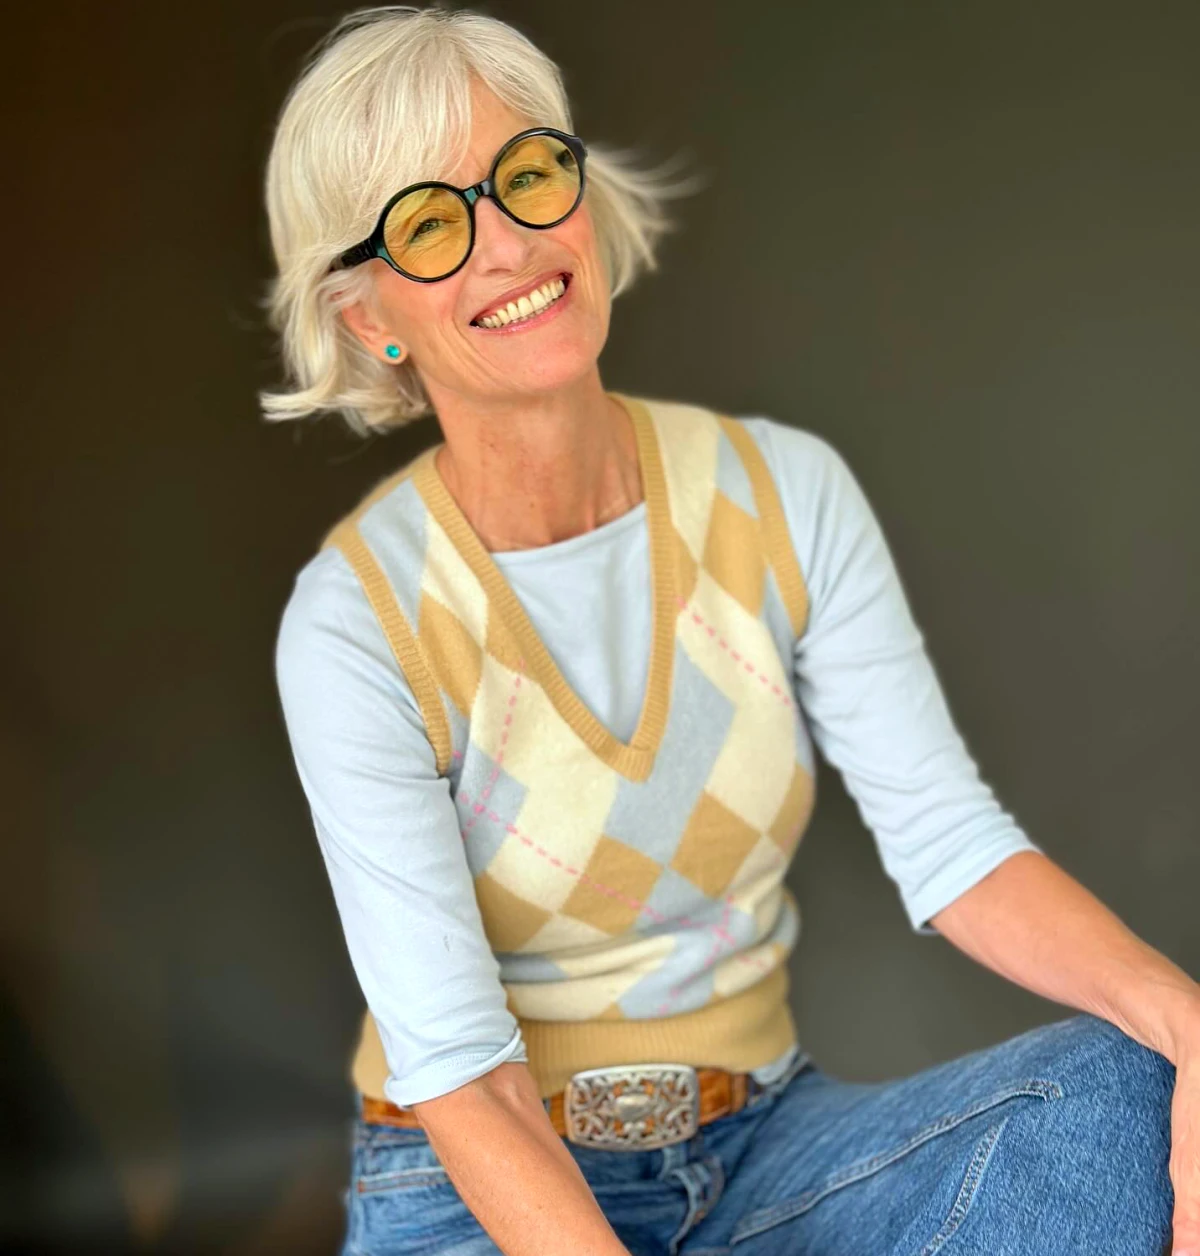 lunettes pour femme de 60 ans cheveux courts blonds look moderne